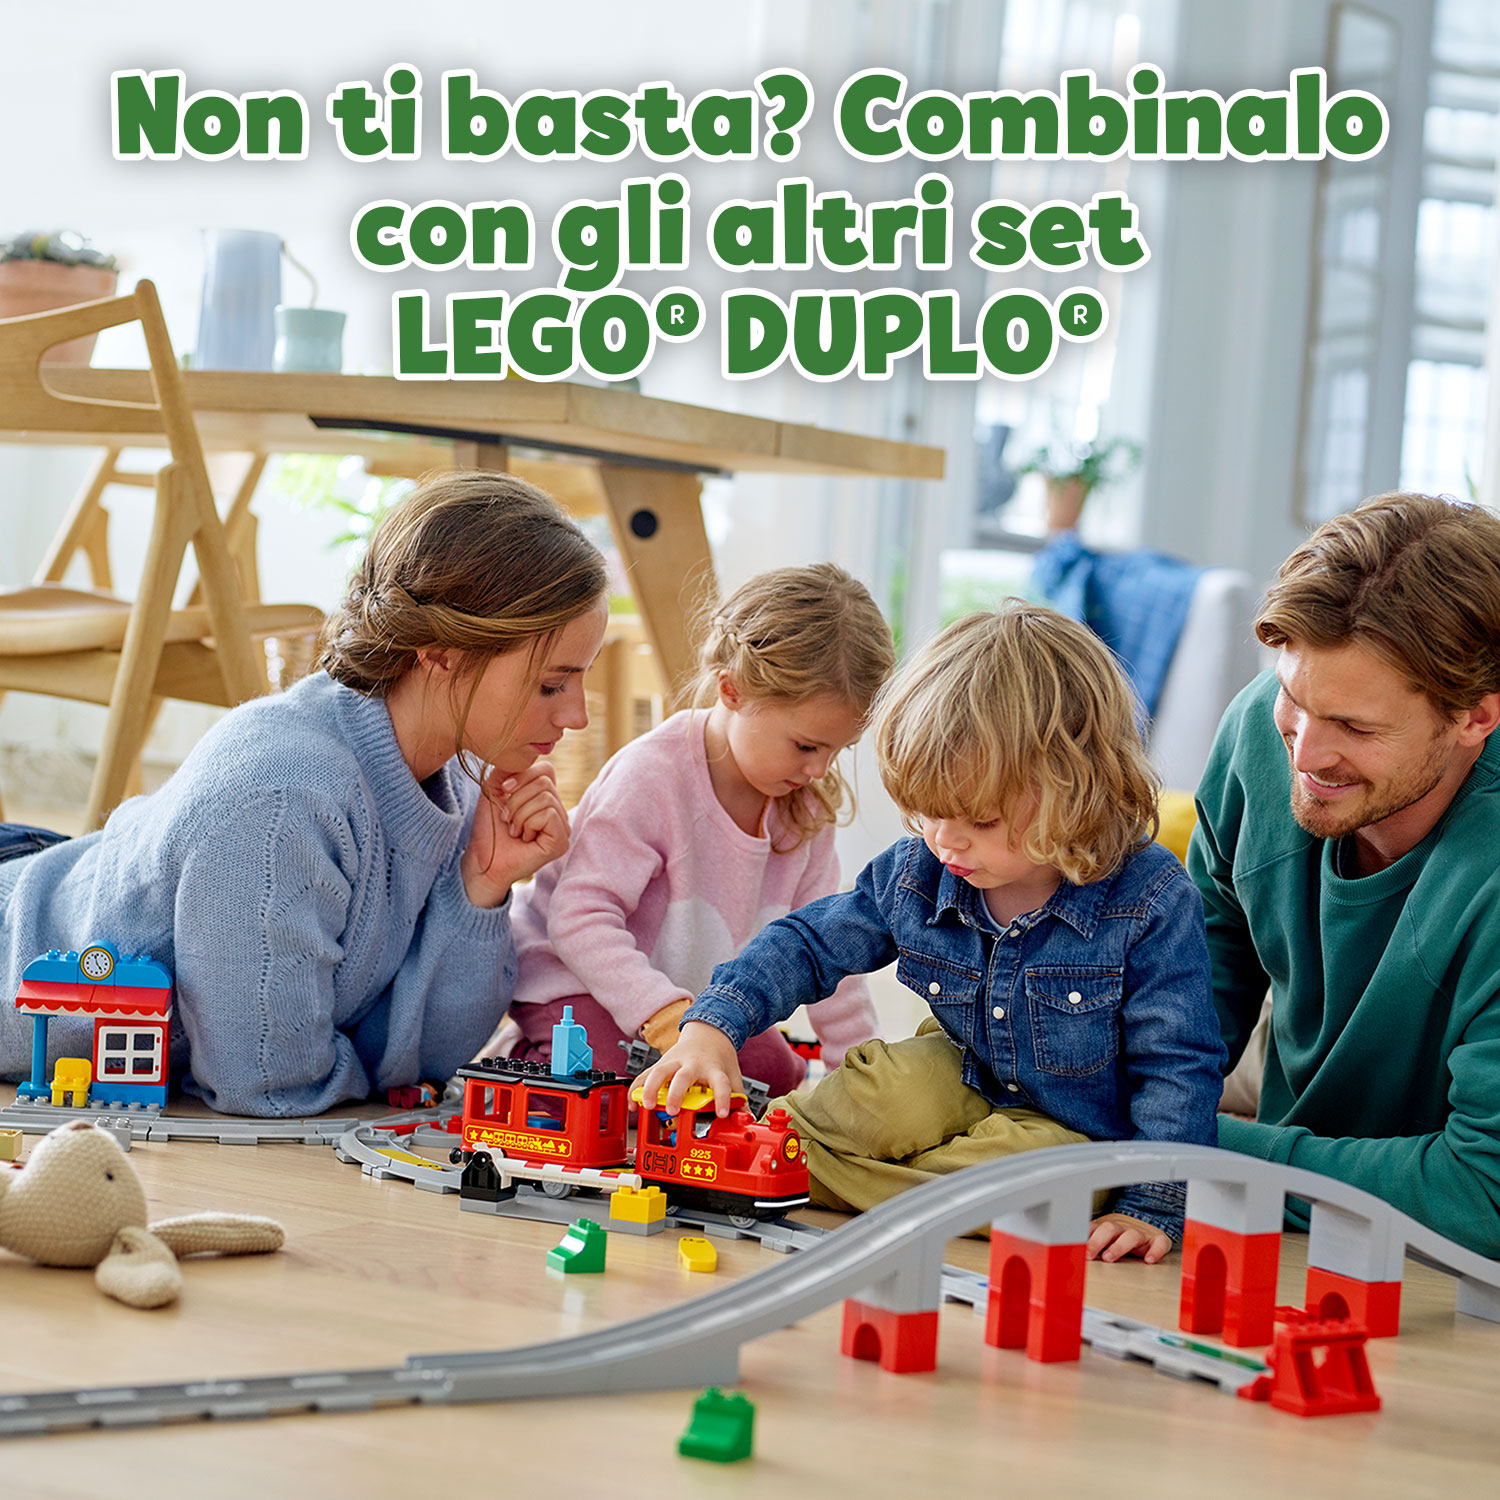 LEGO DUPLO Town Treno a Vapore per Bambini, Luci e Suoni, Giocattolo Push & Go p 10874, , large